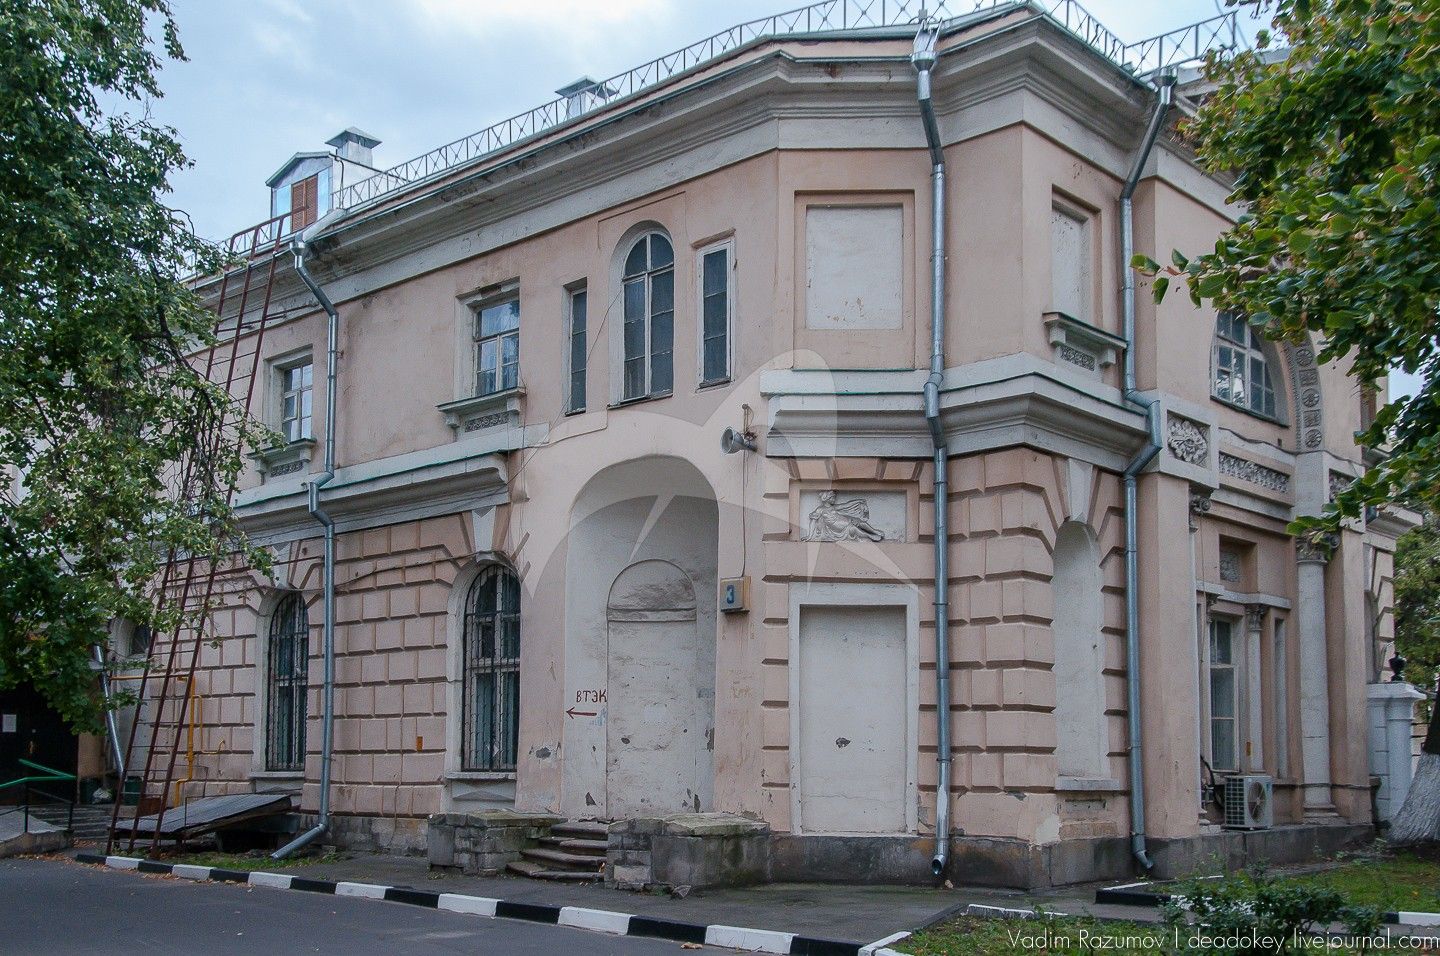 Амбулаторный корпус, 1909 г., архитектор И.А. Иванов–Шиц